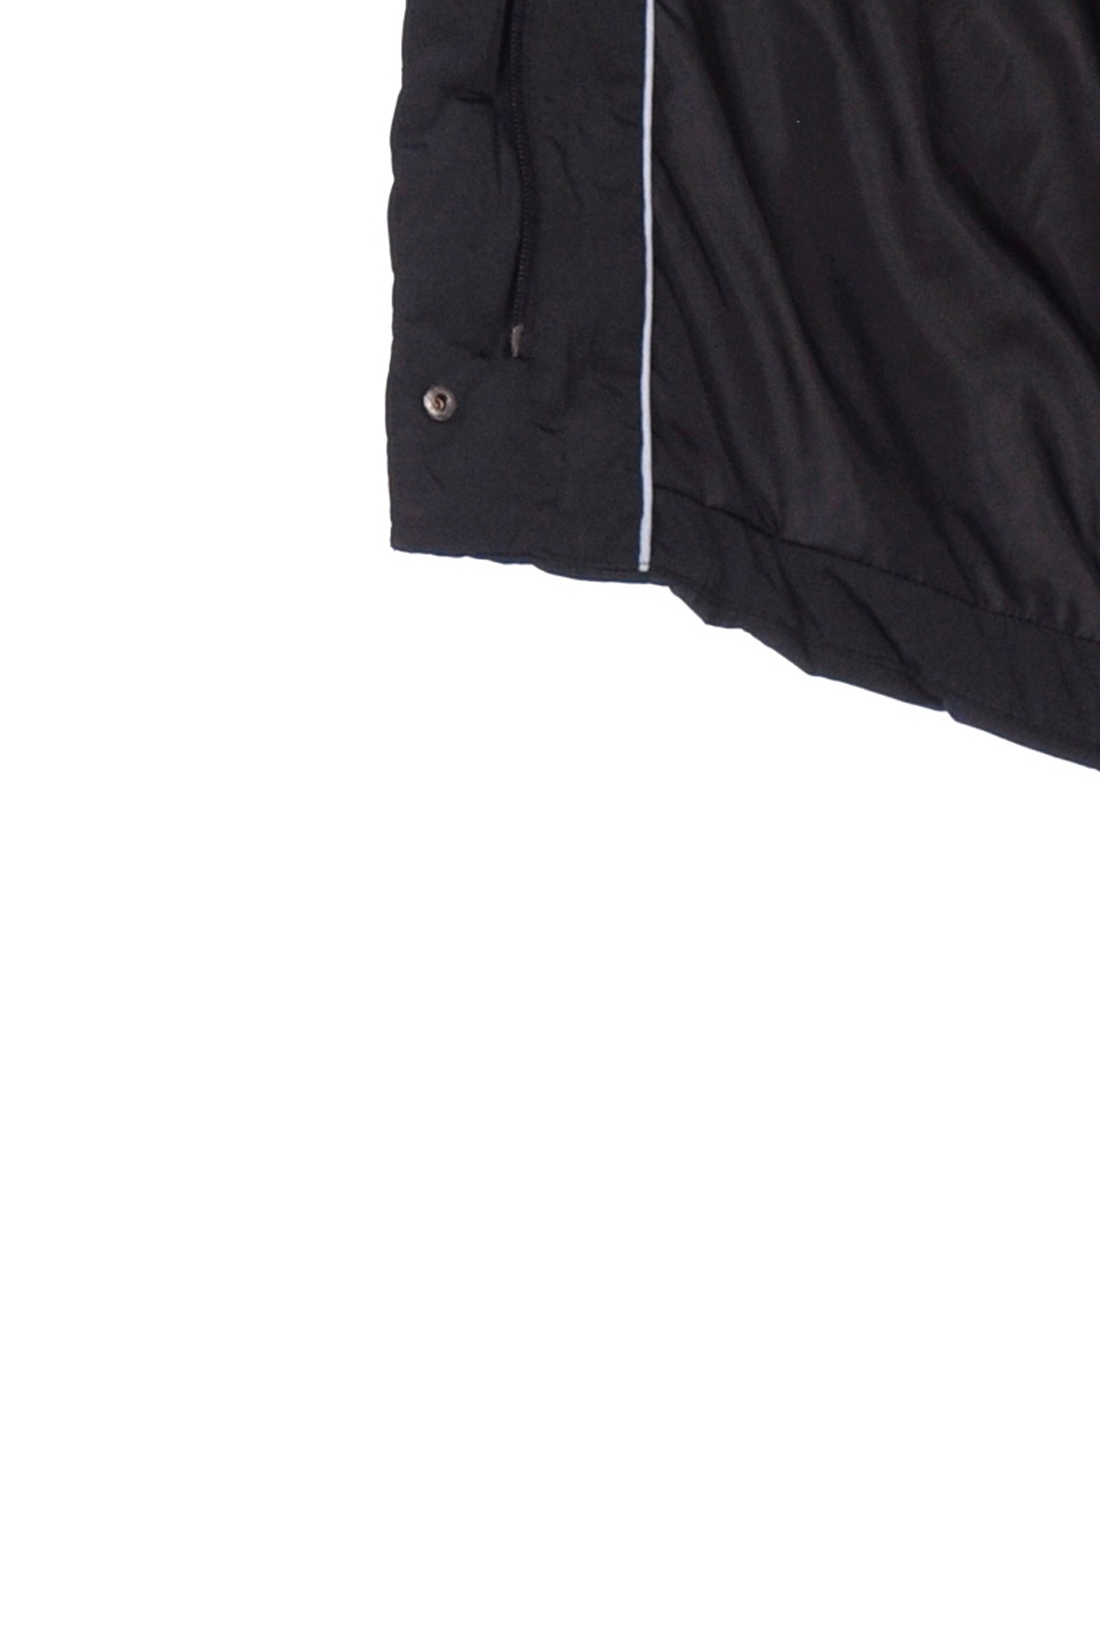 Чёрная куртка с удлинённой спинкой (арт. baon B039563), размер XXL, цвет черный Чёрная куртка с удлинённой спинкой (арт. baon B039563) - фото 3